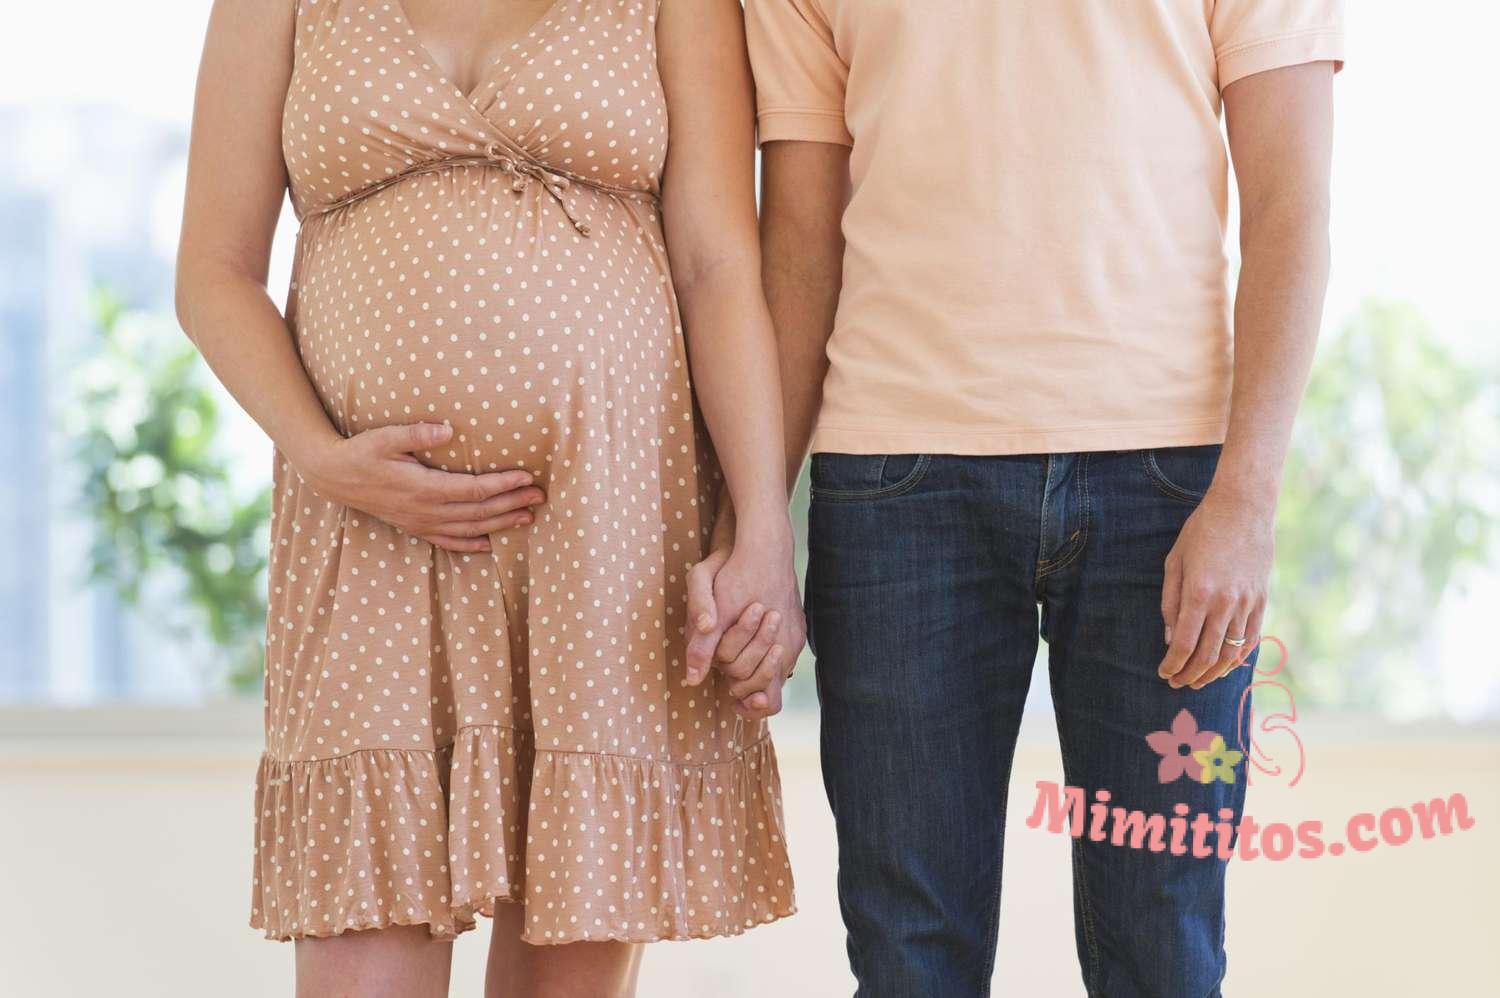 Cómo ayudar a su pareja durante el último mes de embarazo